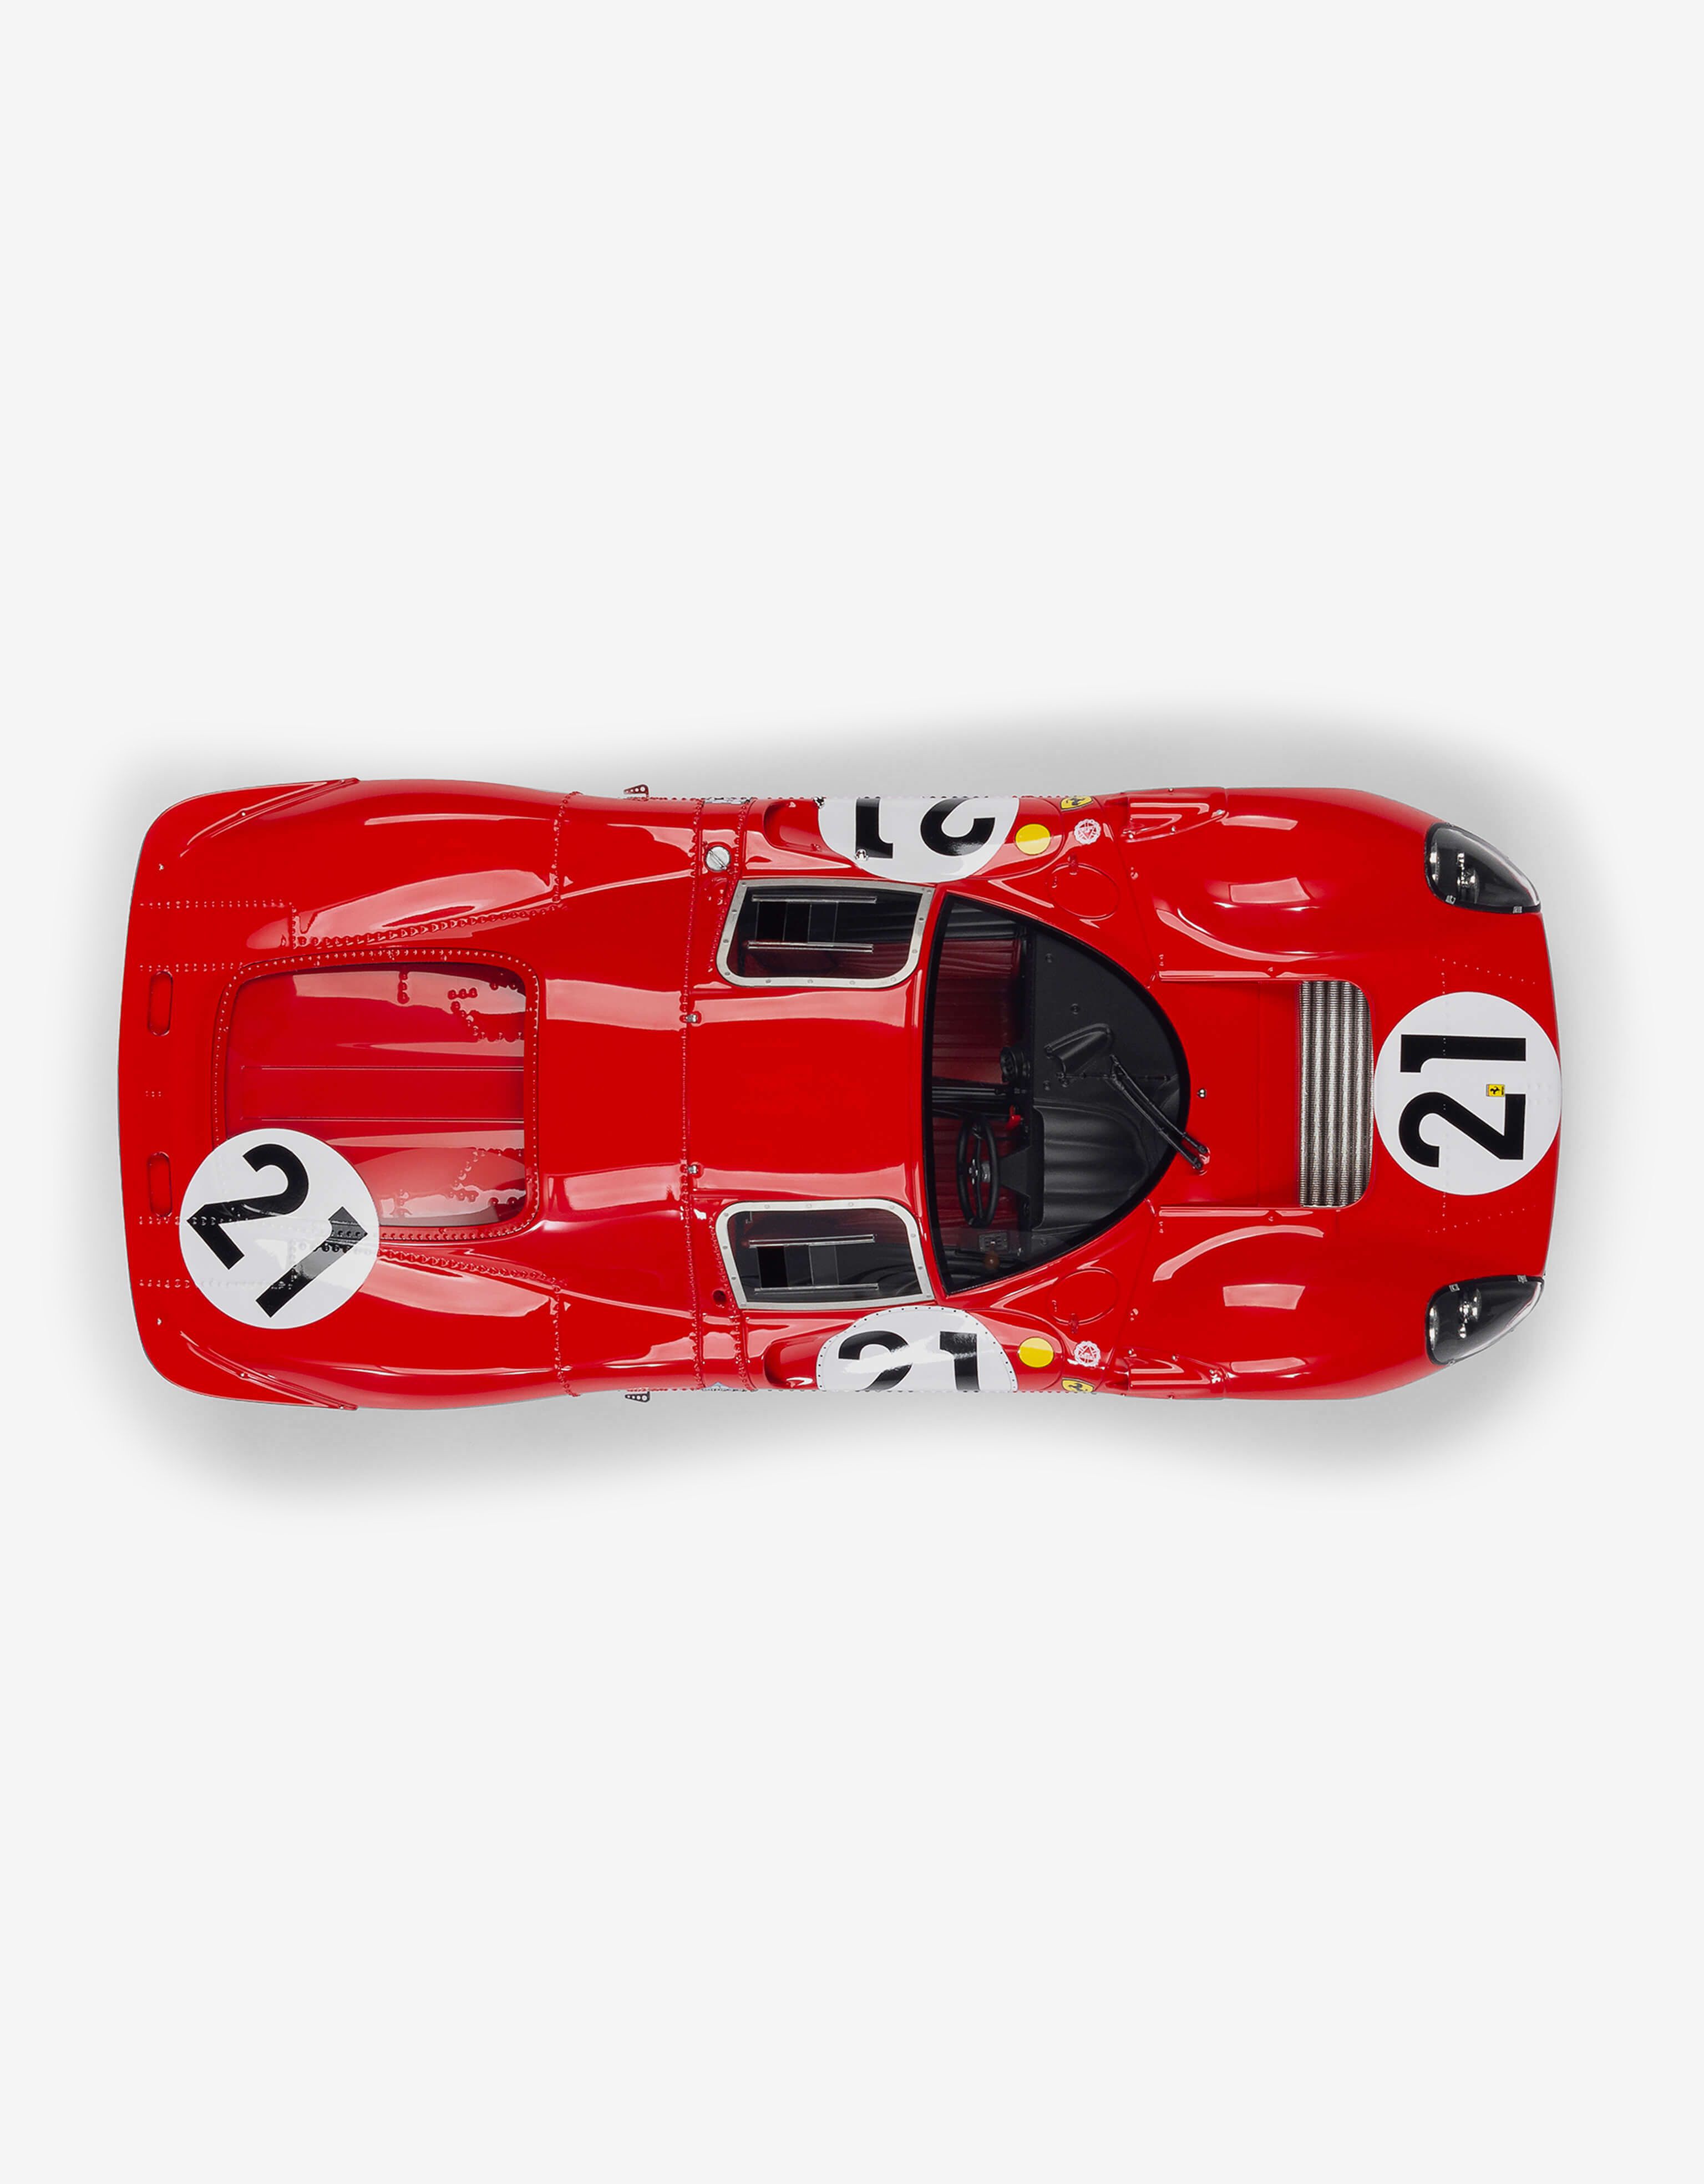 Ferrari Miniatura Ferrari 330 P4 a escala 1:18 Rojo L7588f